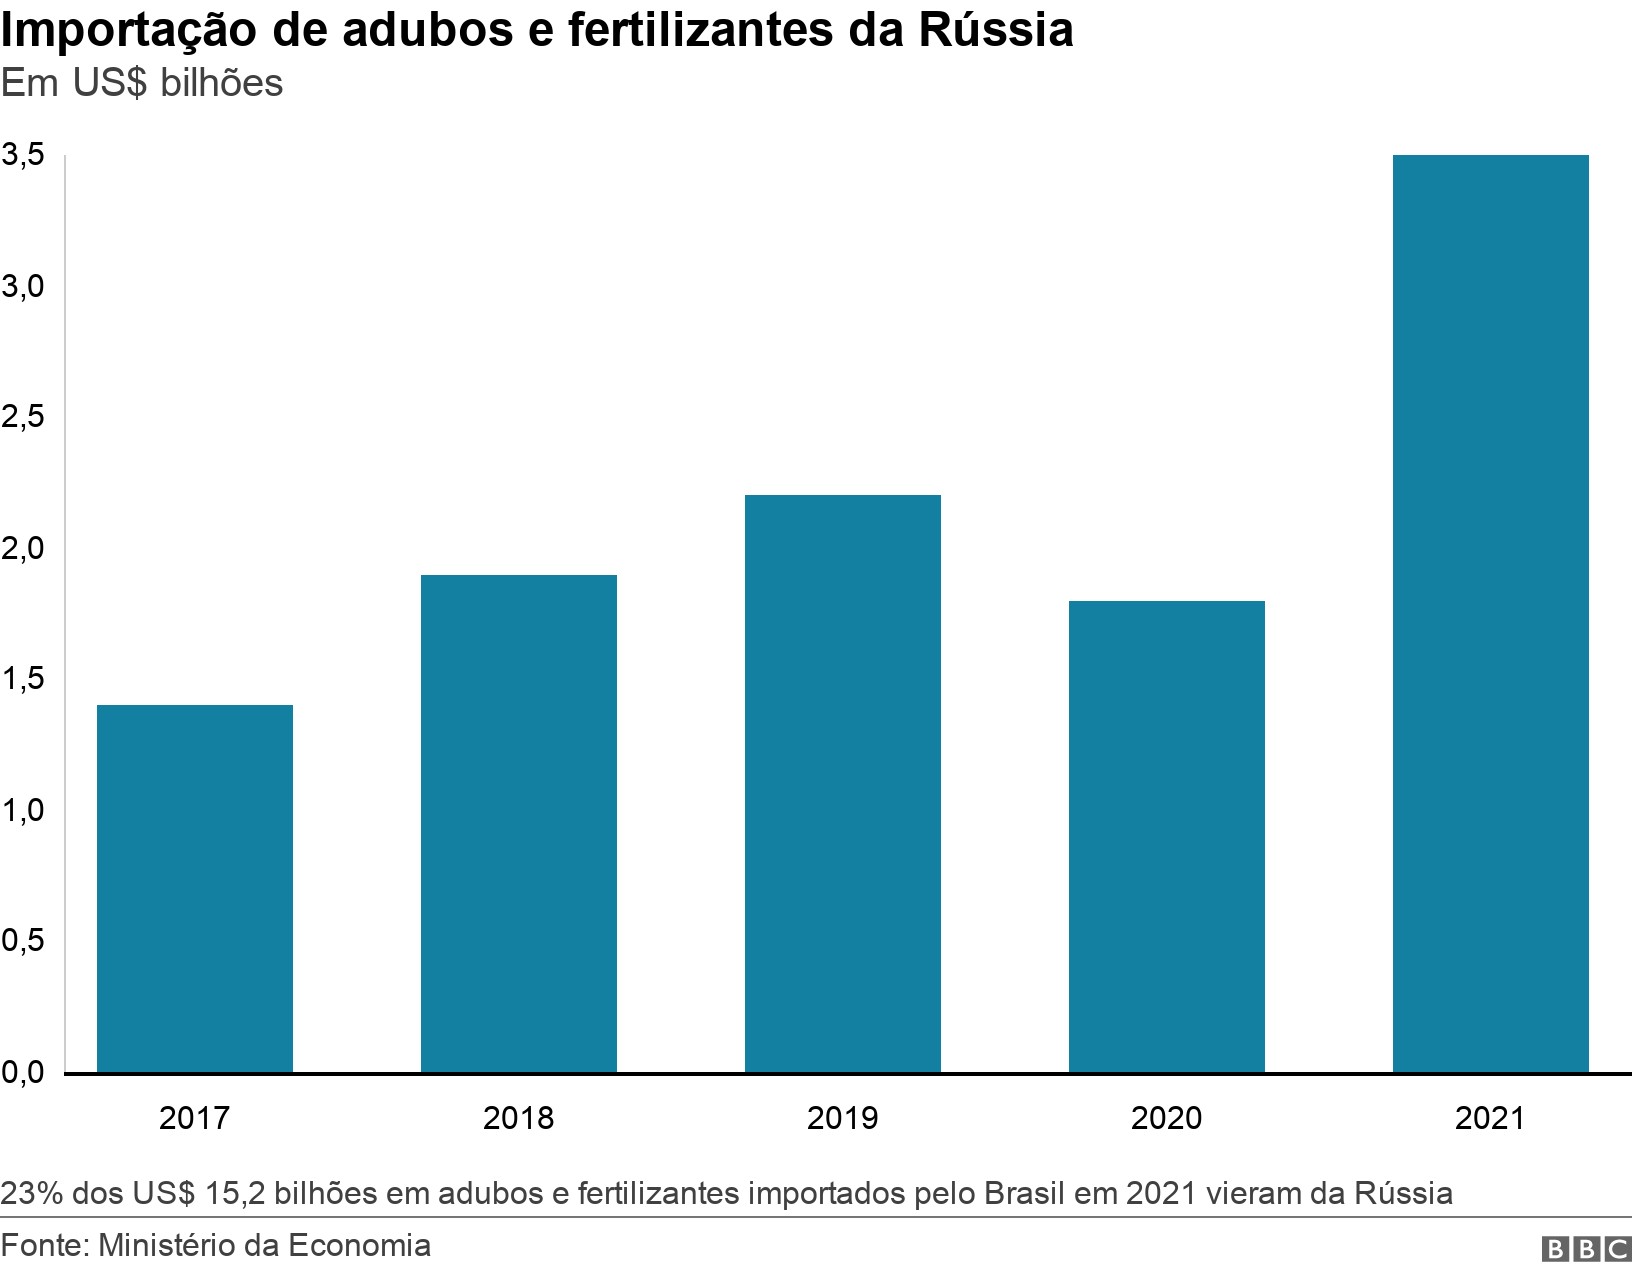 Importação de adubos e fertilizantes da Rússia. Em US$ bilhões.  23% dos US$ 15,2 bilhões em adubos e fertilizantes importados pelo Brasil em 2021 vieram da Rússia. (Foto: BBC News)